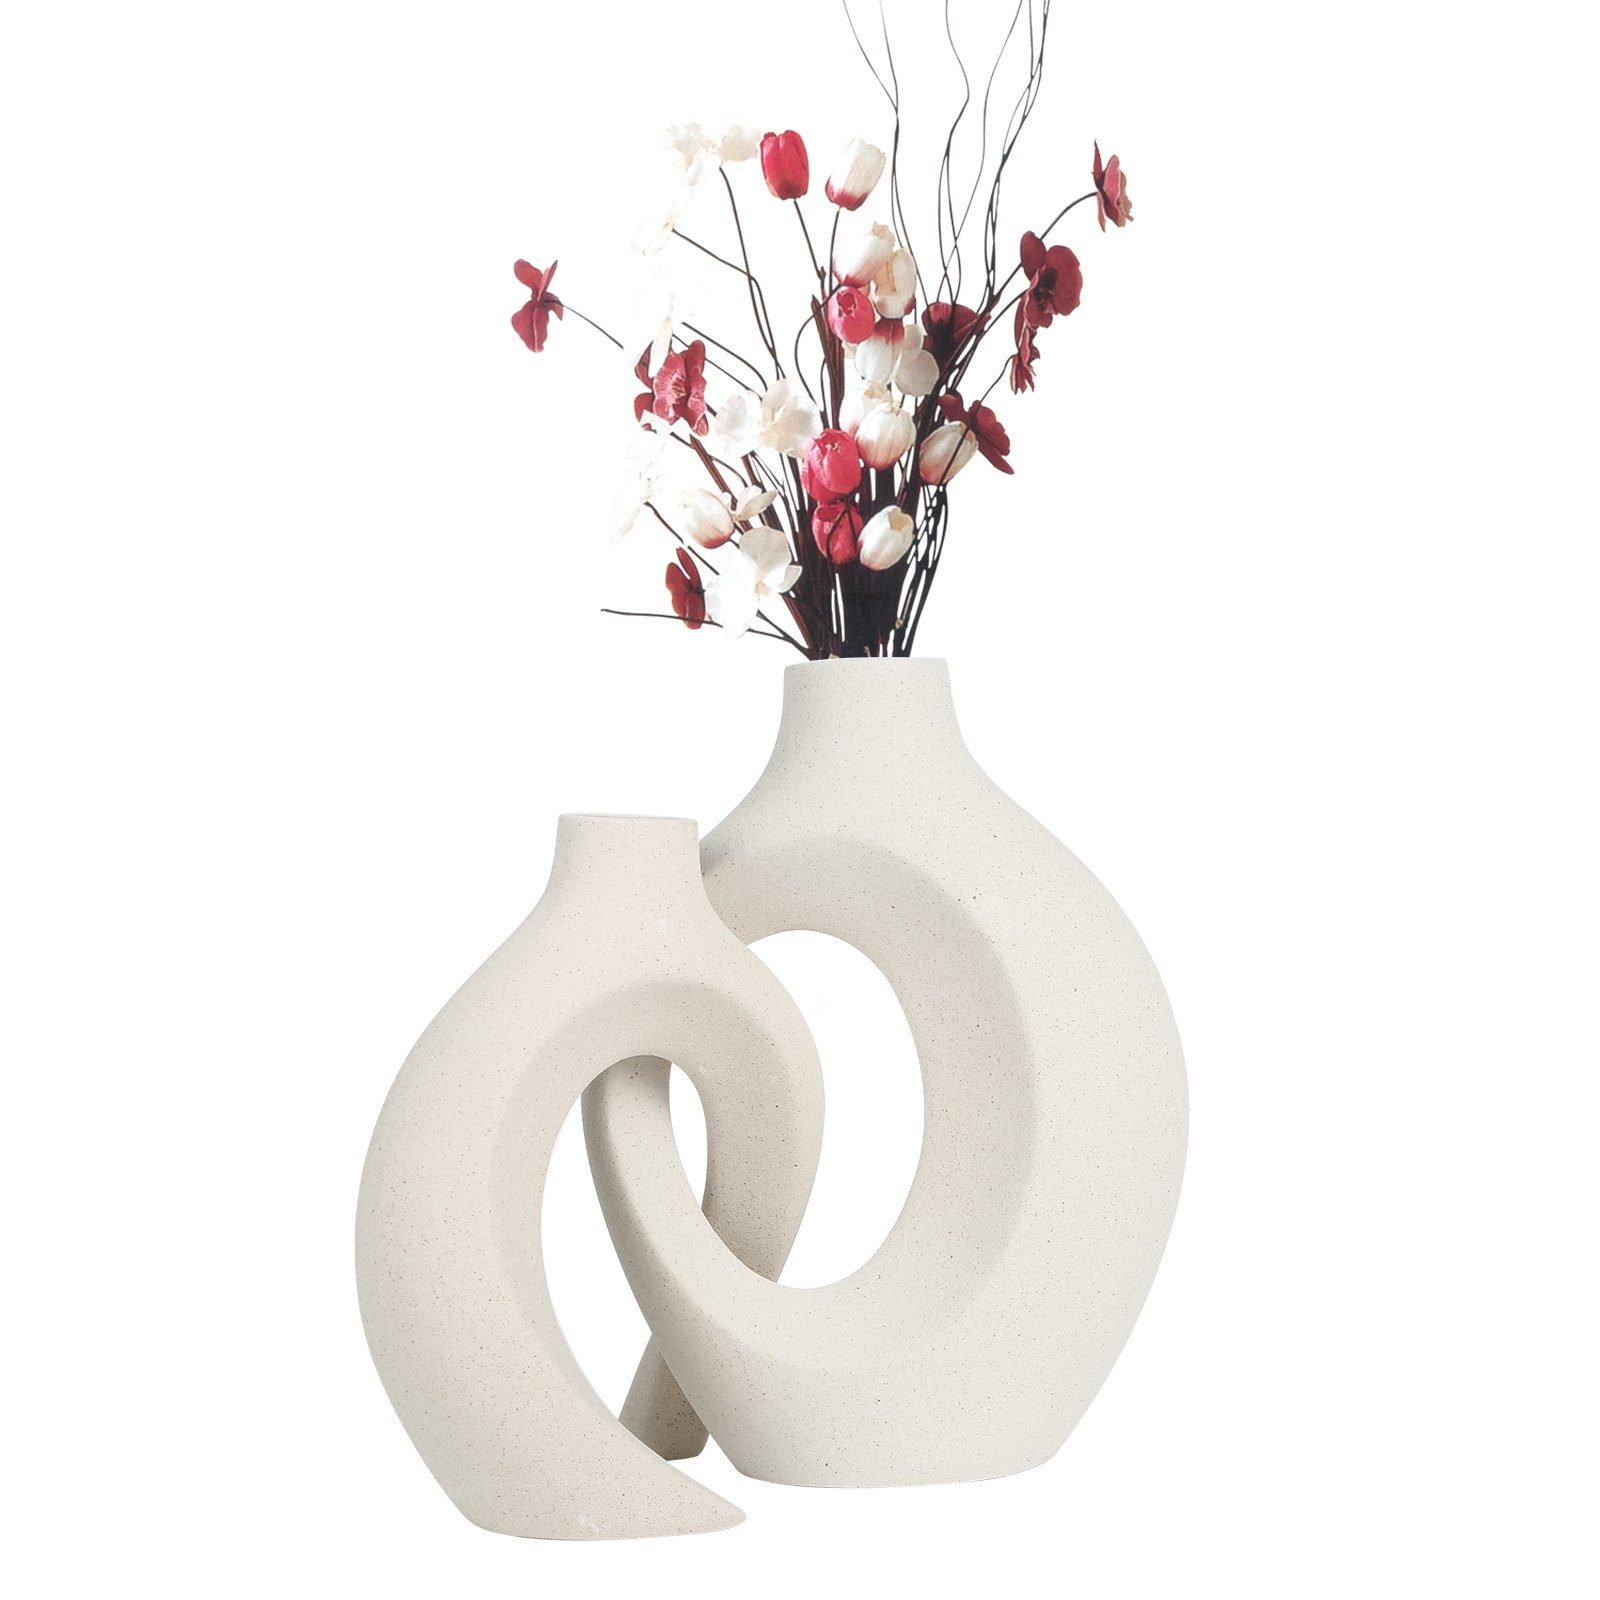 Keramisches Keramik Vasen-Set im TWSOUL Weiß, europäischen Stil Dekovase in